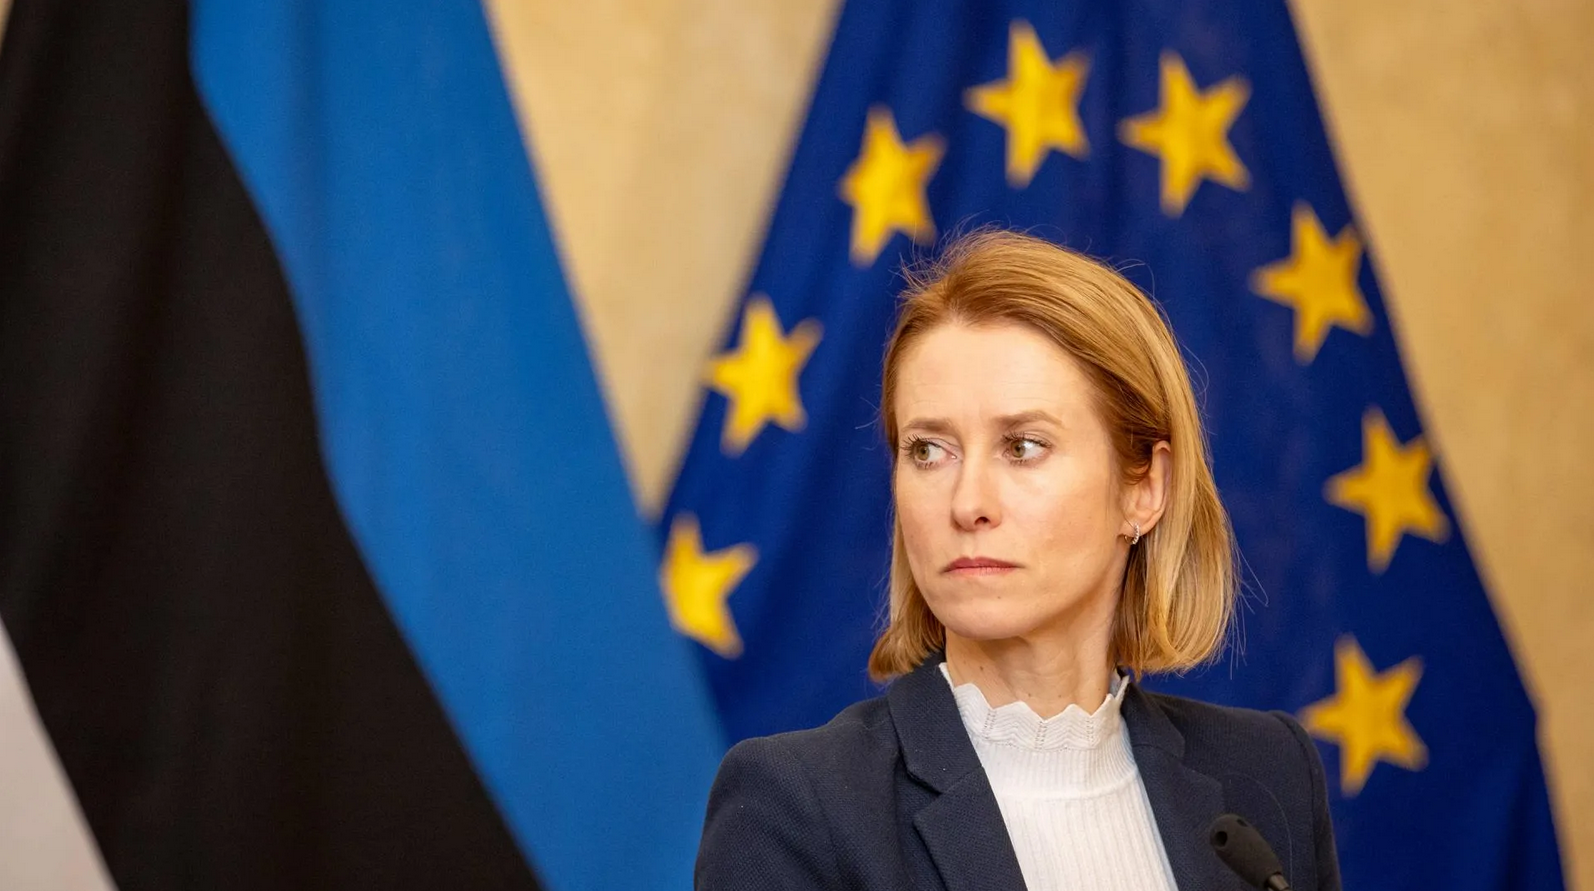 Европейская сегрегация: почему прибалтийских политиков не пускают на руководящие должности в ЕС